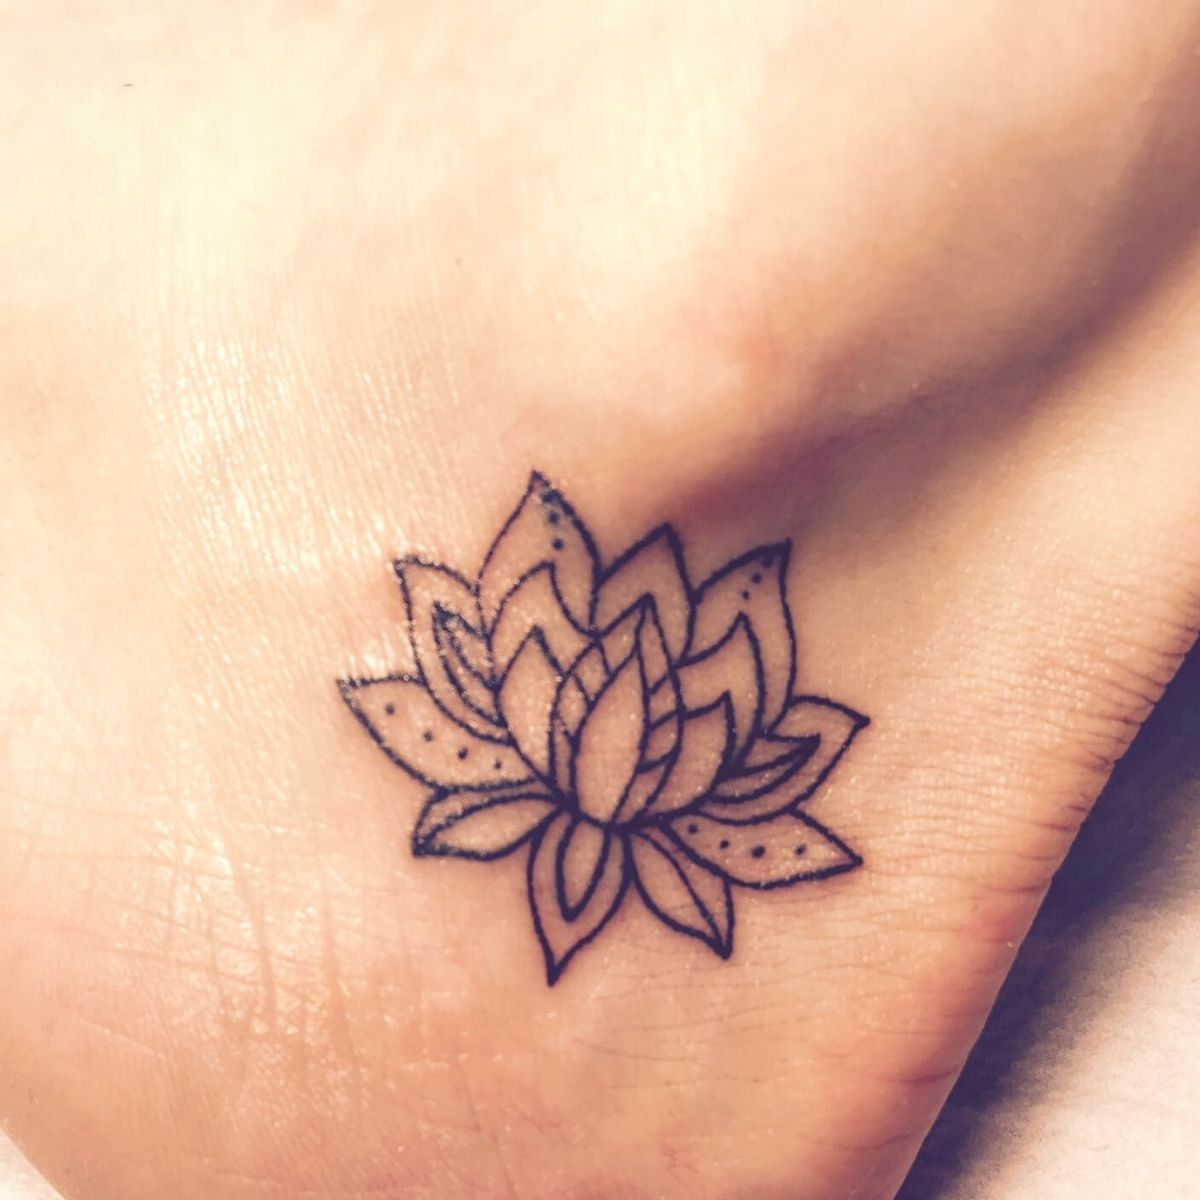 Lotus flowers small tattoo ideas on Thursd